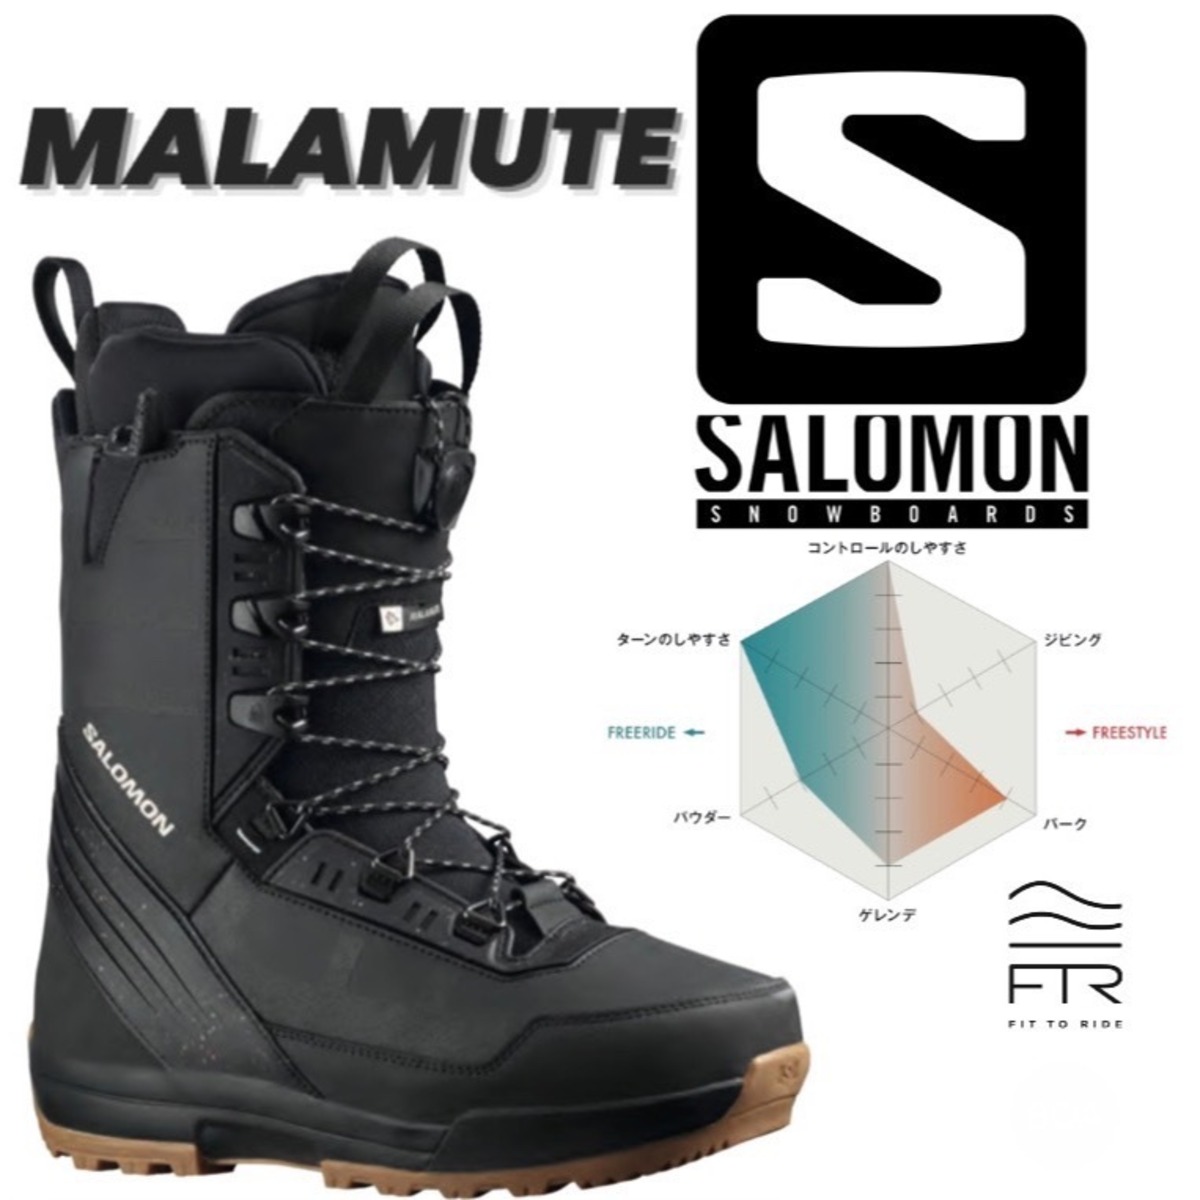 22-23 SALOMON『 MALAMUTE 』スノーボード スノボ ブーツ サロモン マラミュート カービング パウダー キッカー パーク パイプ  地形遊び メンズ レディース | snowboardshop MDS